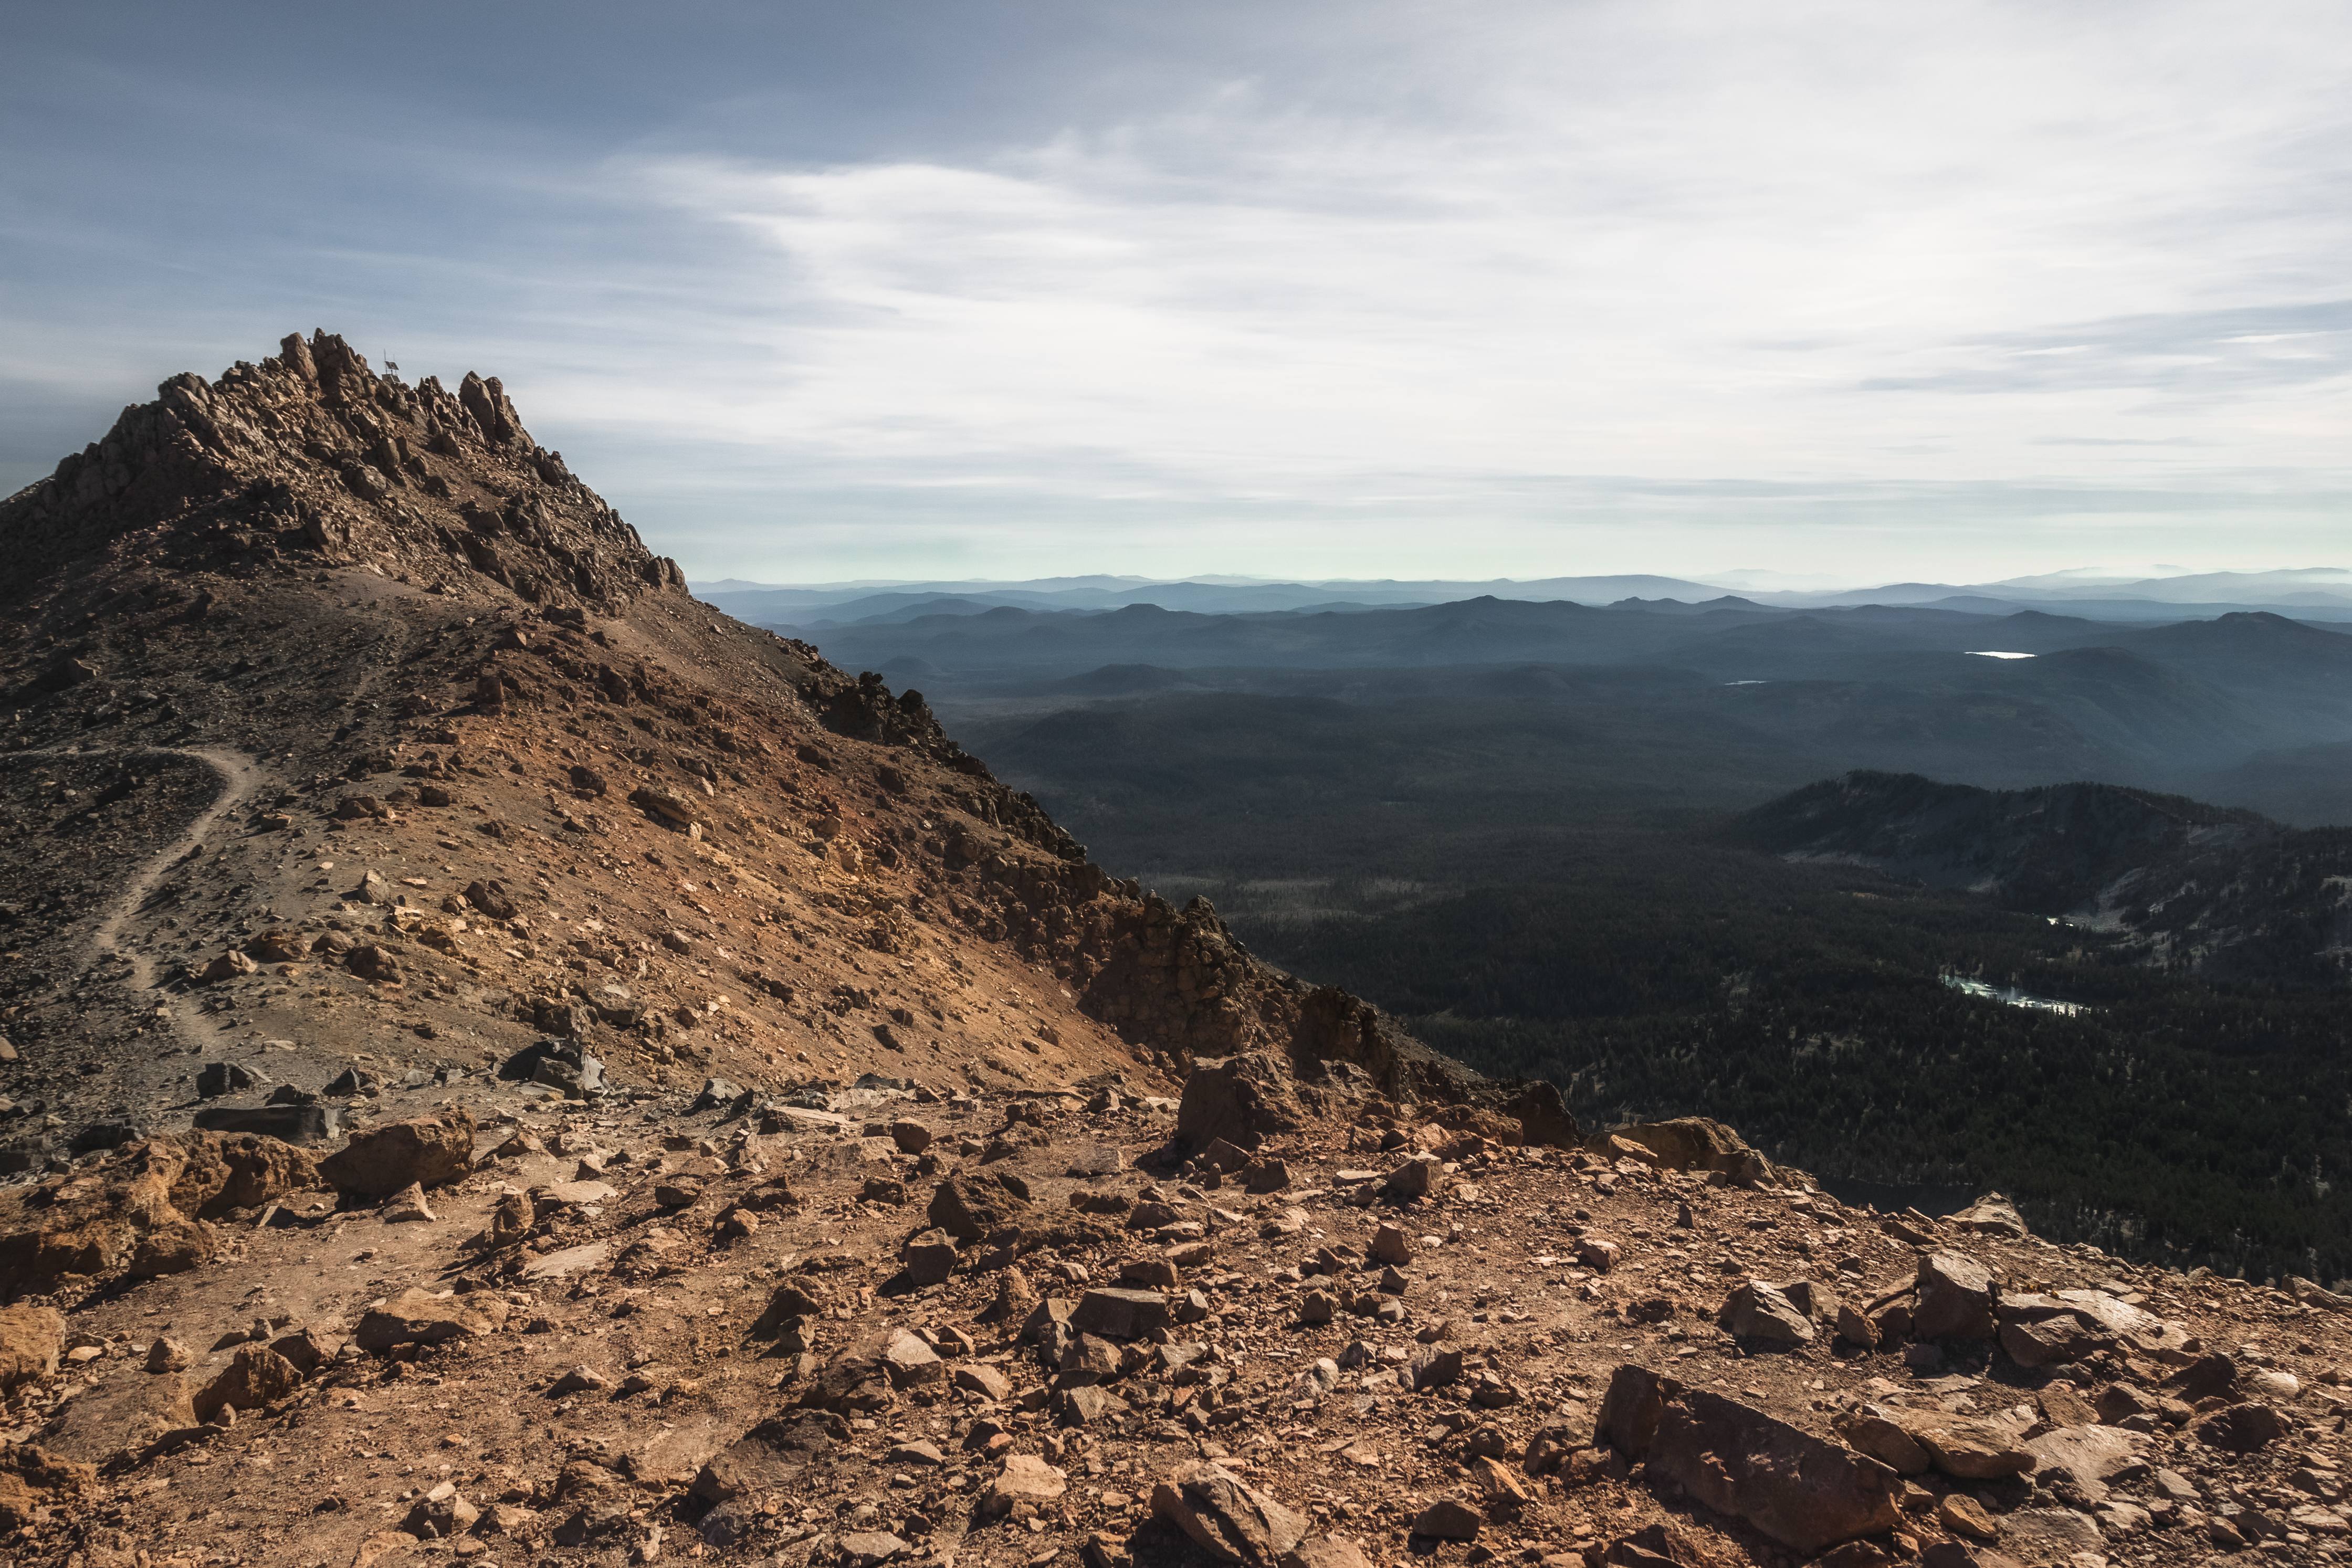 Lassen Peak from the Top